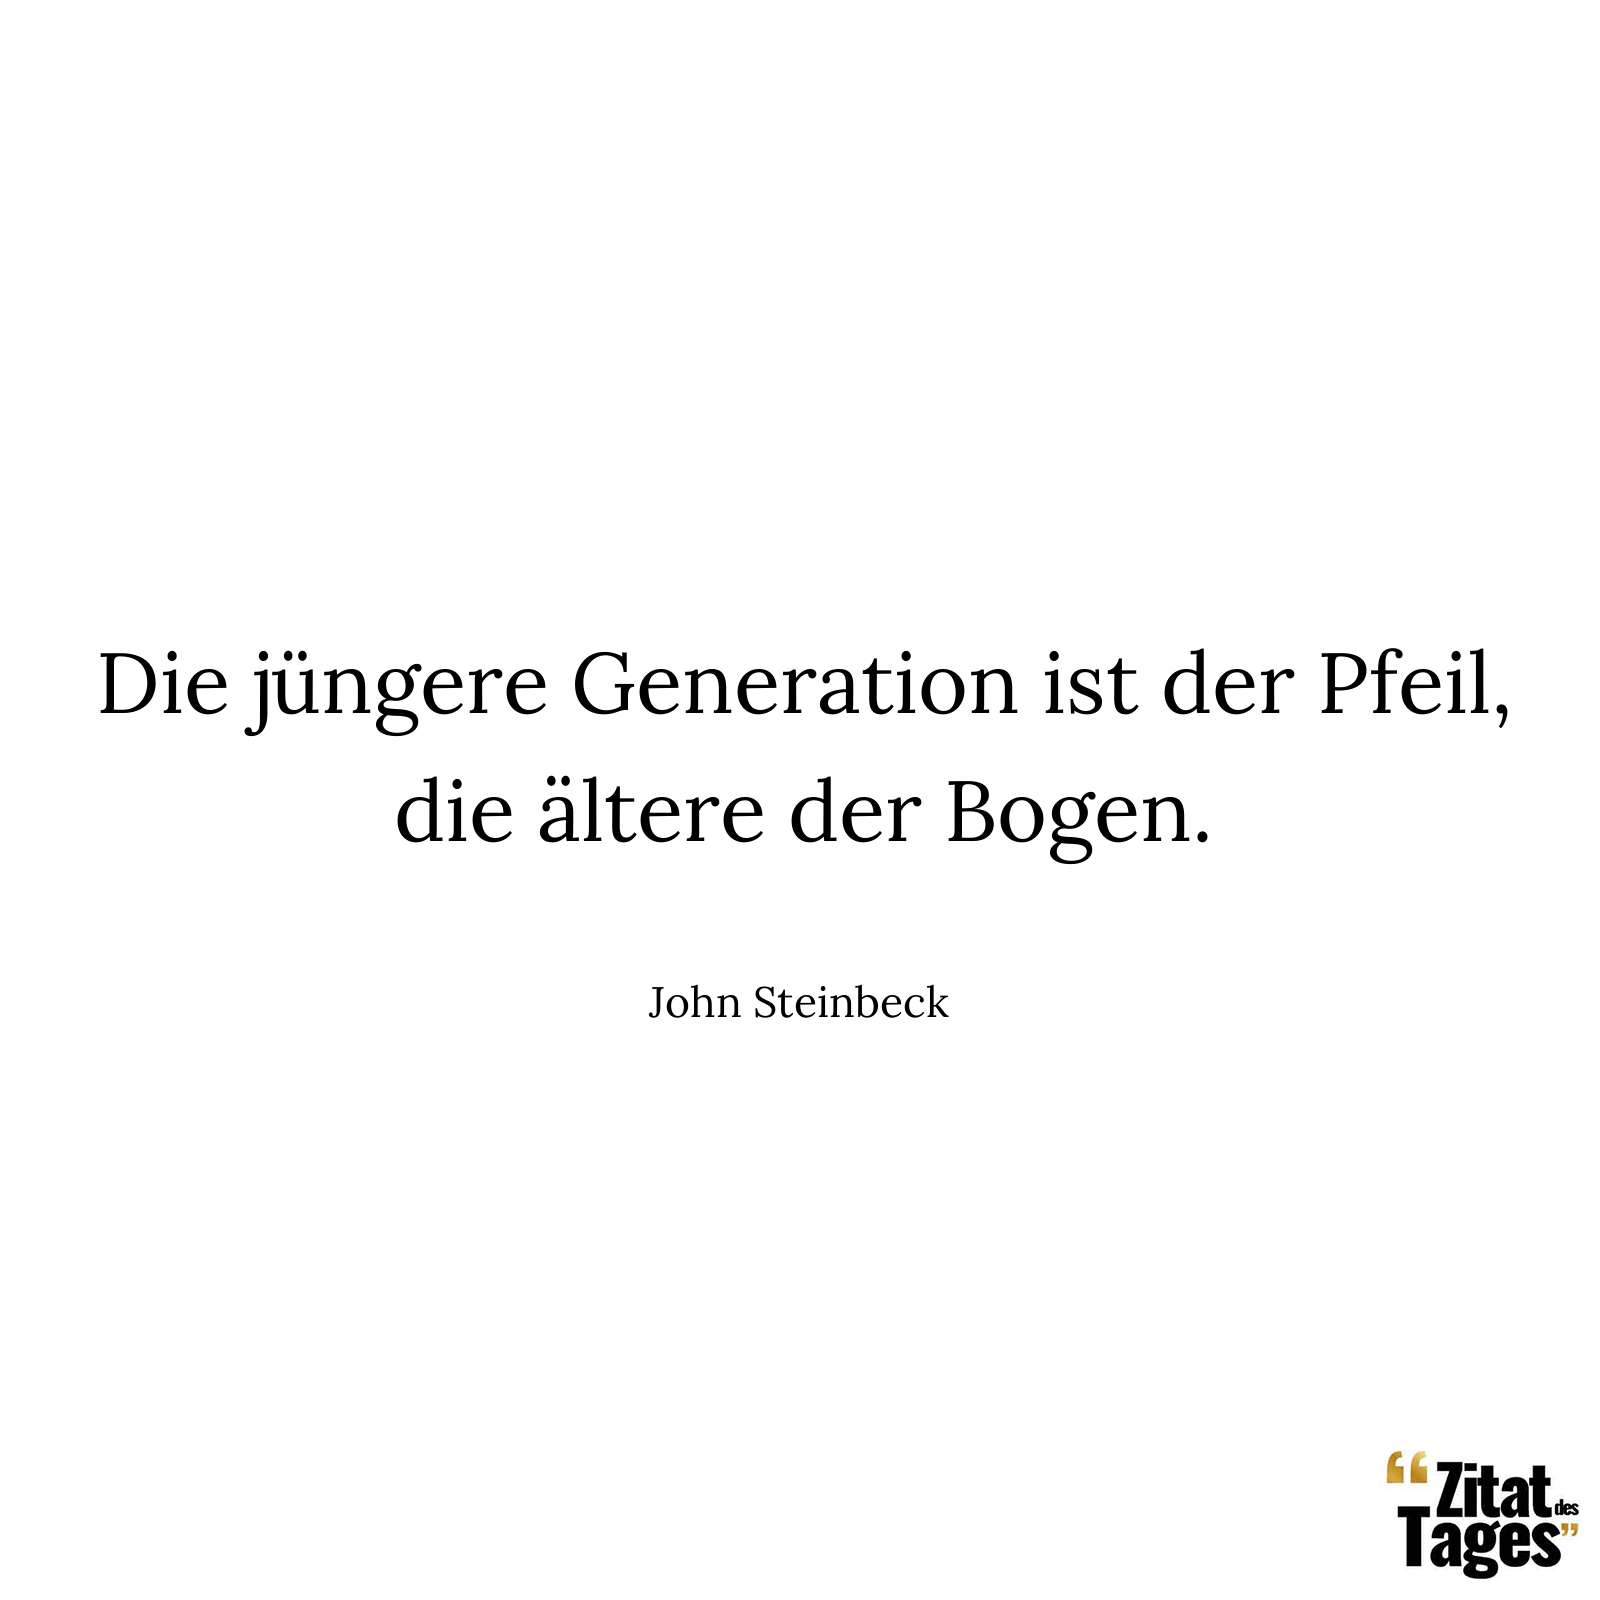 Die jüngere Generation ist der Pfeil, die ältere der Bogen. - John Steinbeck